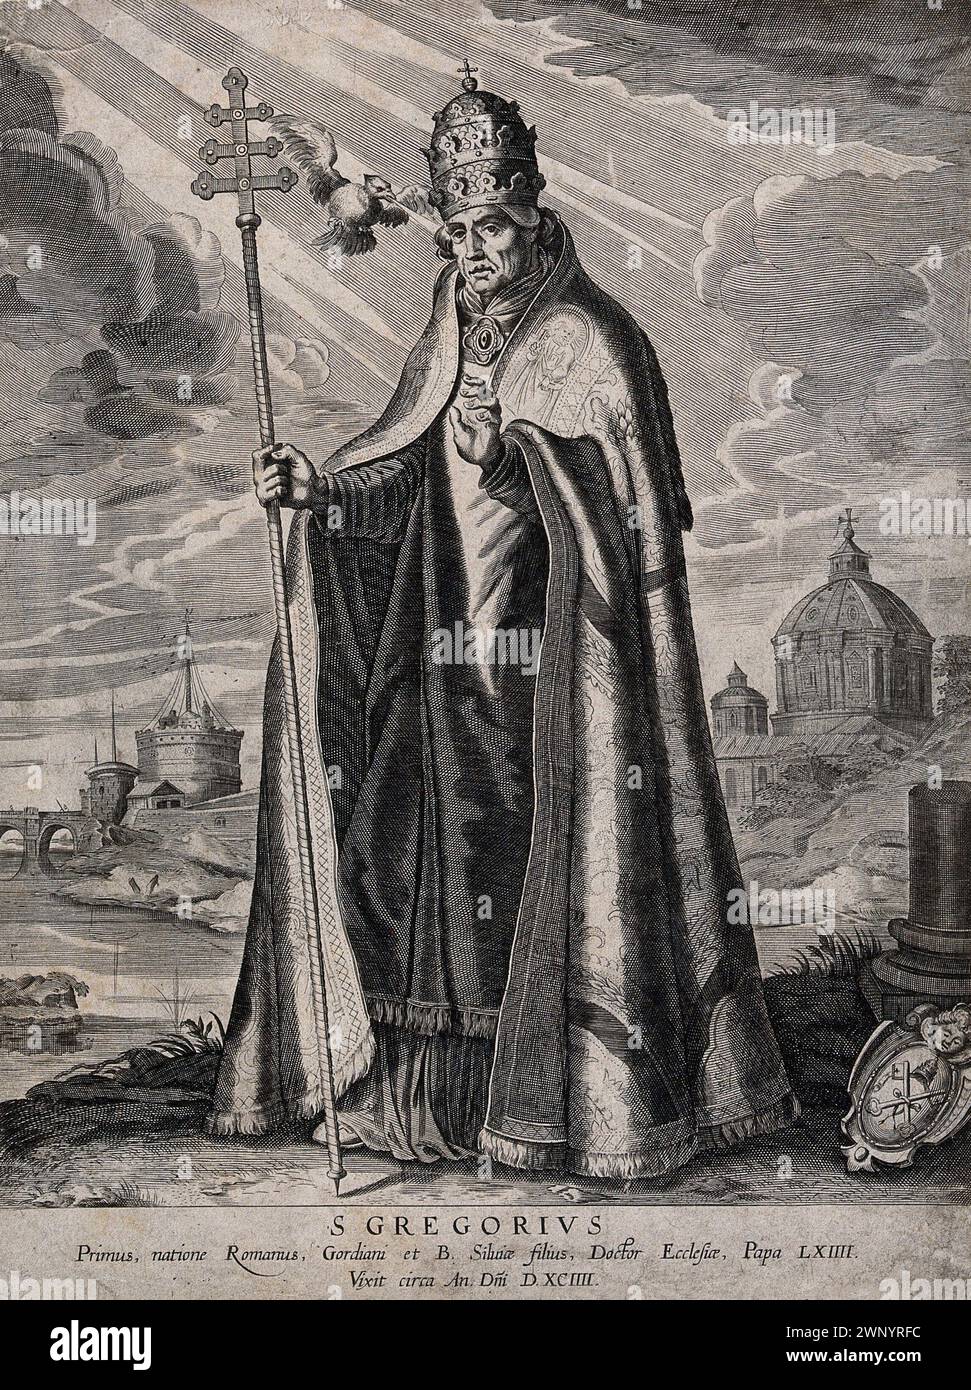 Ein Kupferstich von Papst Gregor I. (auch bekannt als Heiliger Gregor der große) aus dem 17. Jahrhundert, der von 590 bis 604 n. Chr. Pontiff war. Er war der 64. Papst. Er war es, der den Gesang des Chors einführte, der als Gregorianischer Chant bekannt ist. Stockfoto